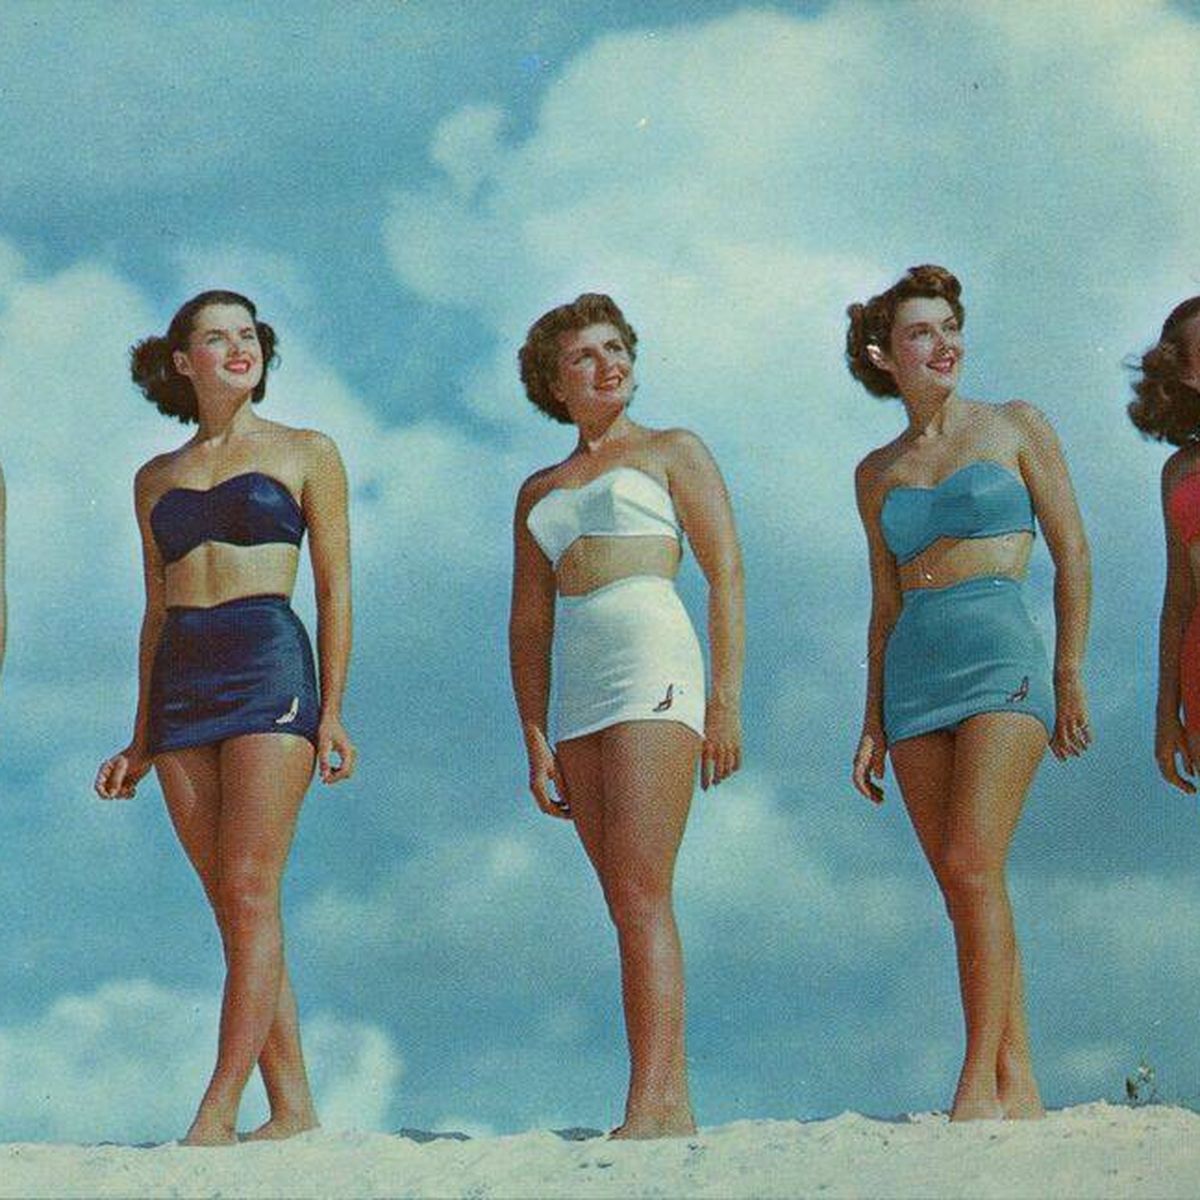 Salvación Original Los invitados La historia del bikini: geopolítica nuclear a través de los cuerpos de las  mujeres